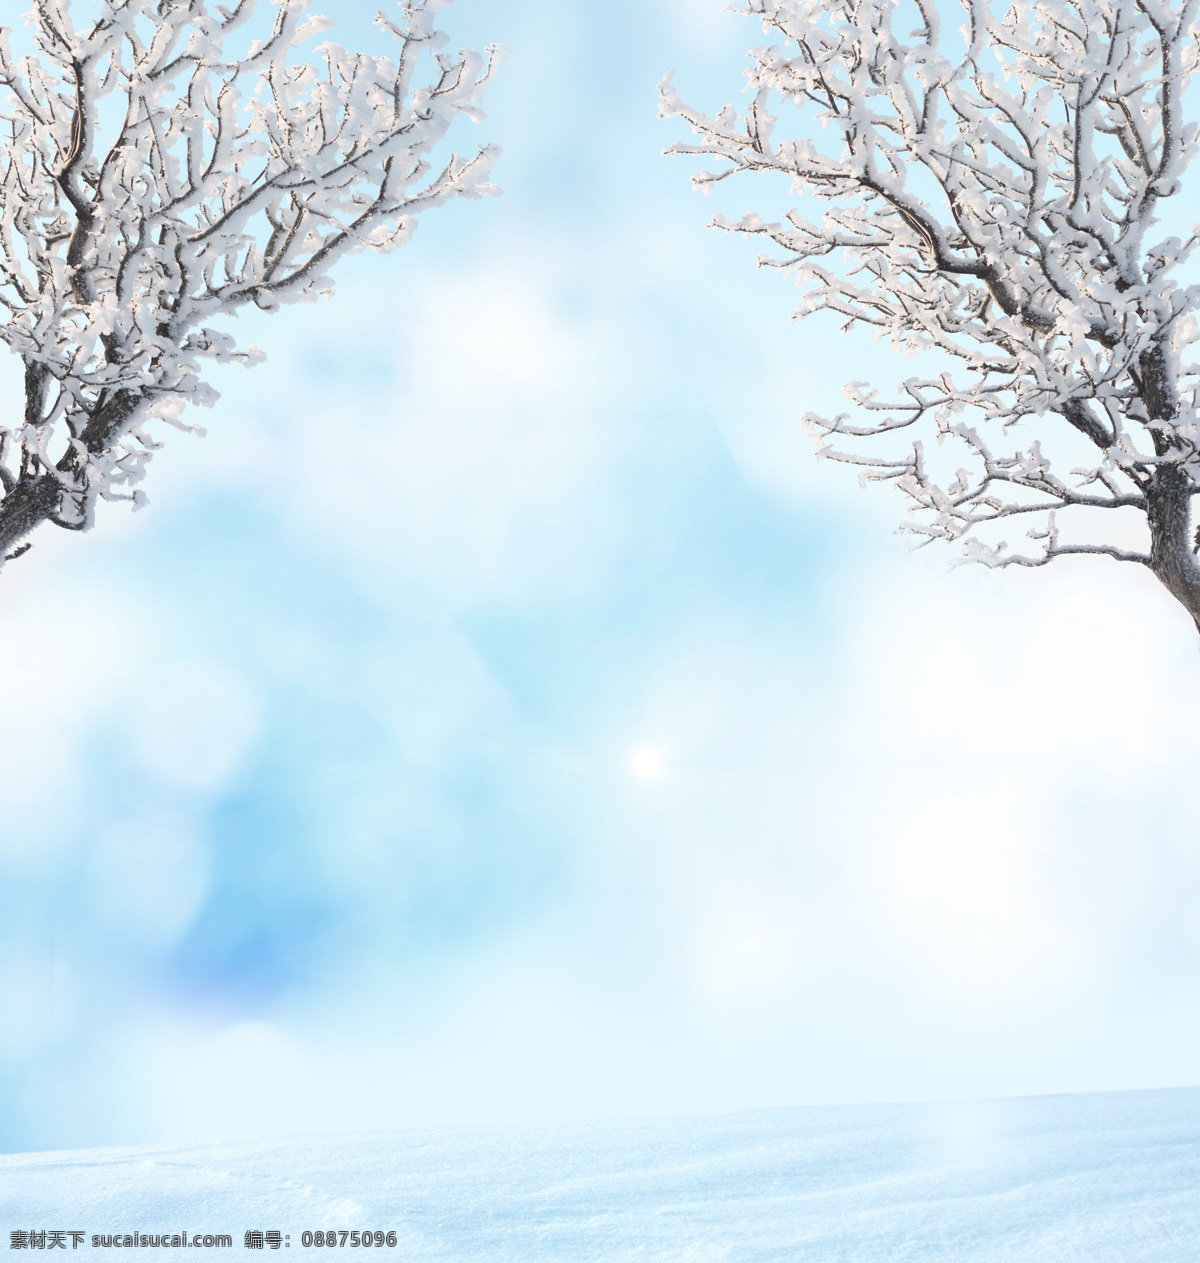 梦幻 圣诞节 背景 冬天背景 冬季背景 冬天雪景 雪地 梦幻背景 圣诞节背景 冬天的树木 自然风景 自然景观 白色